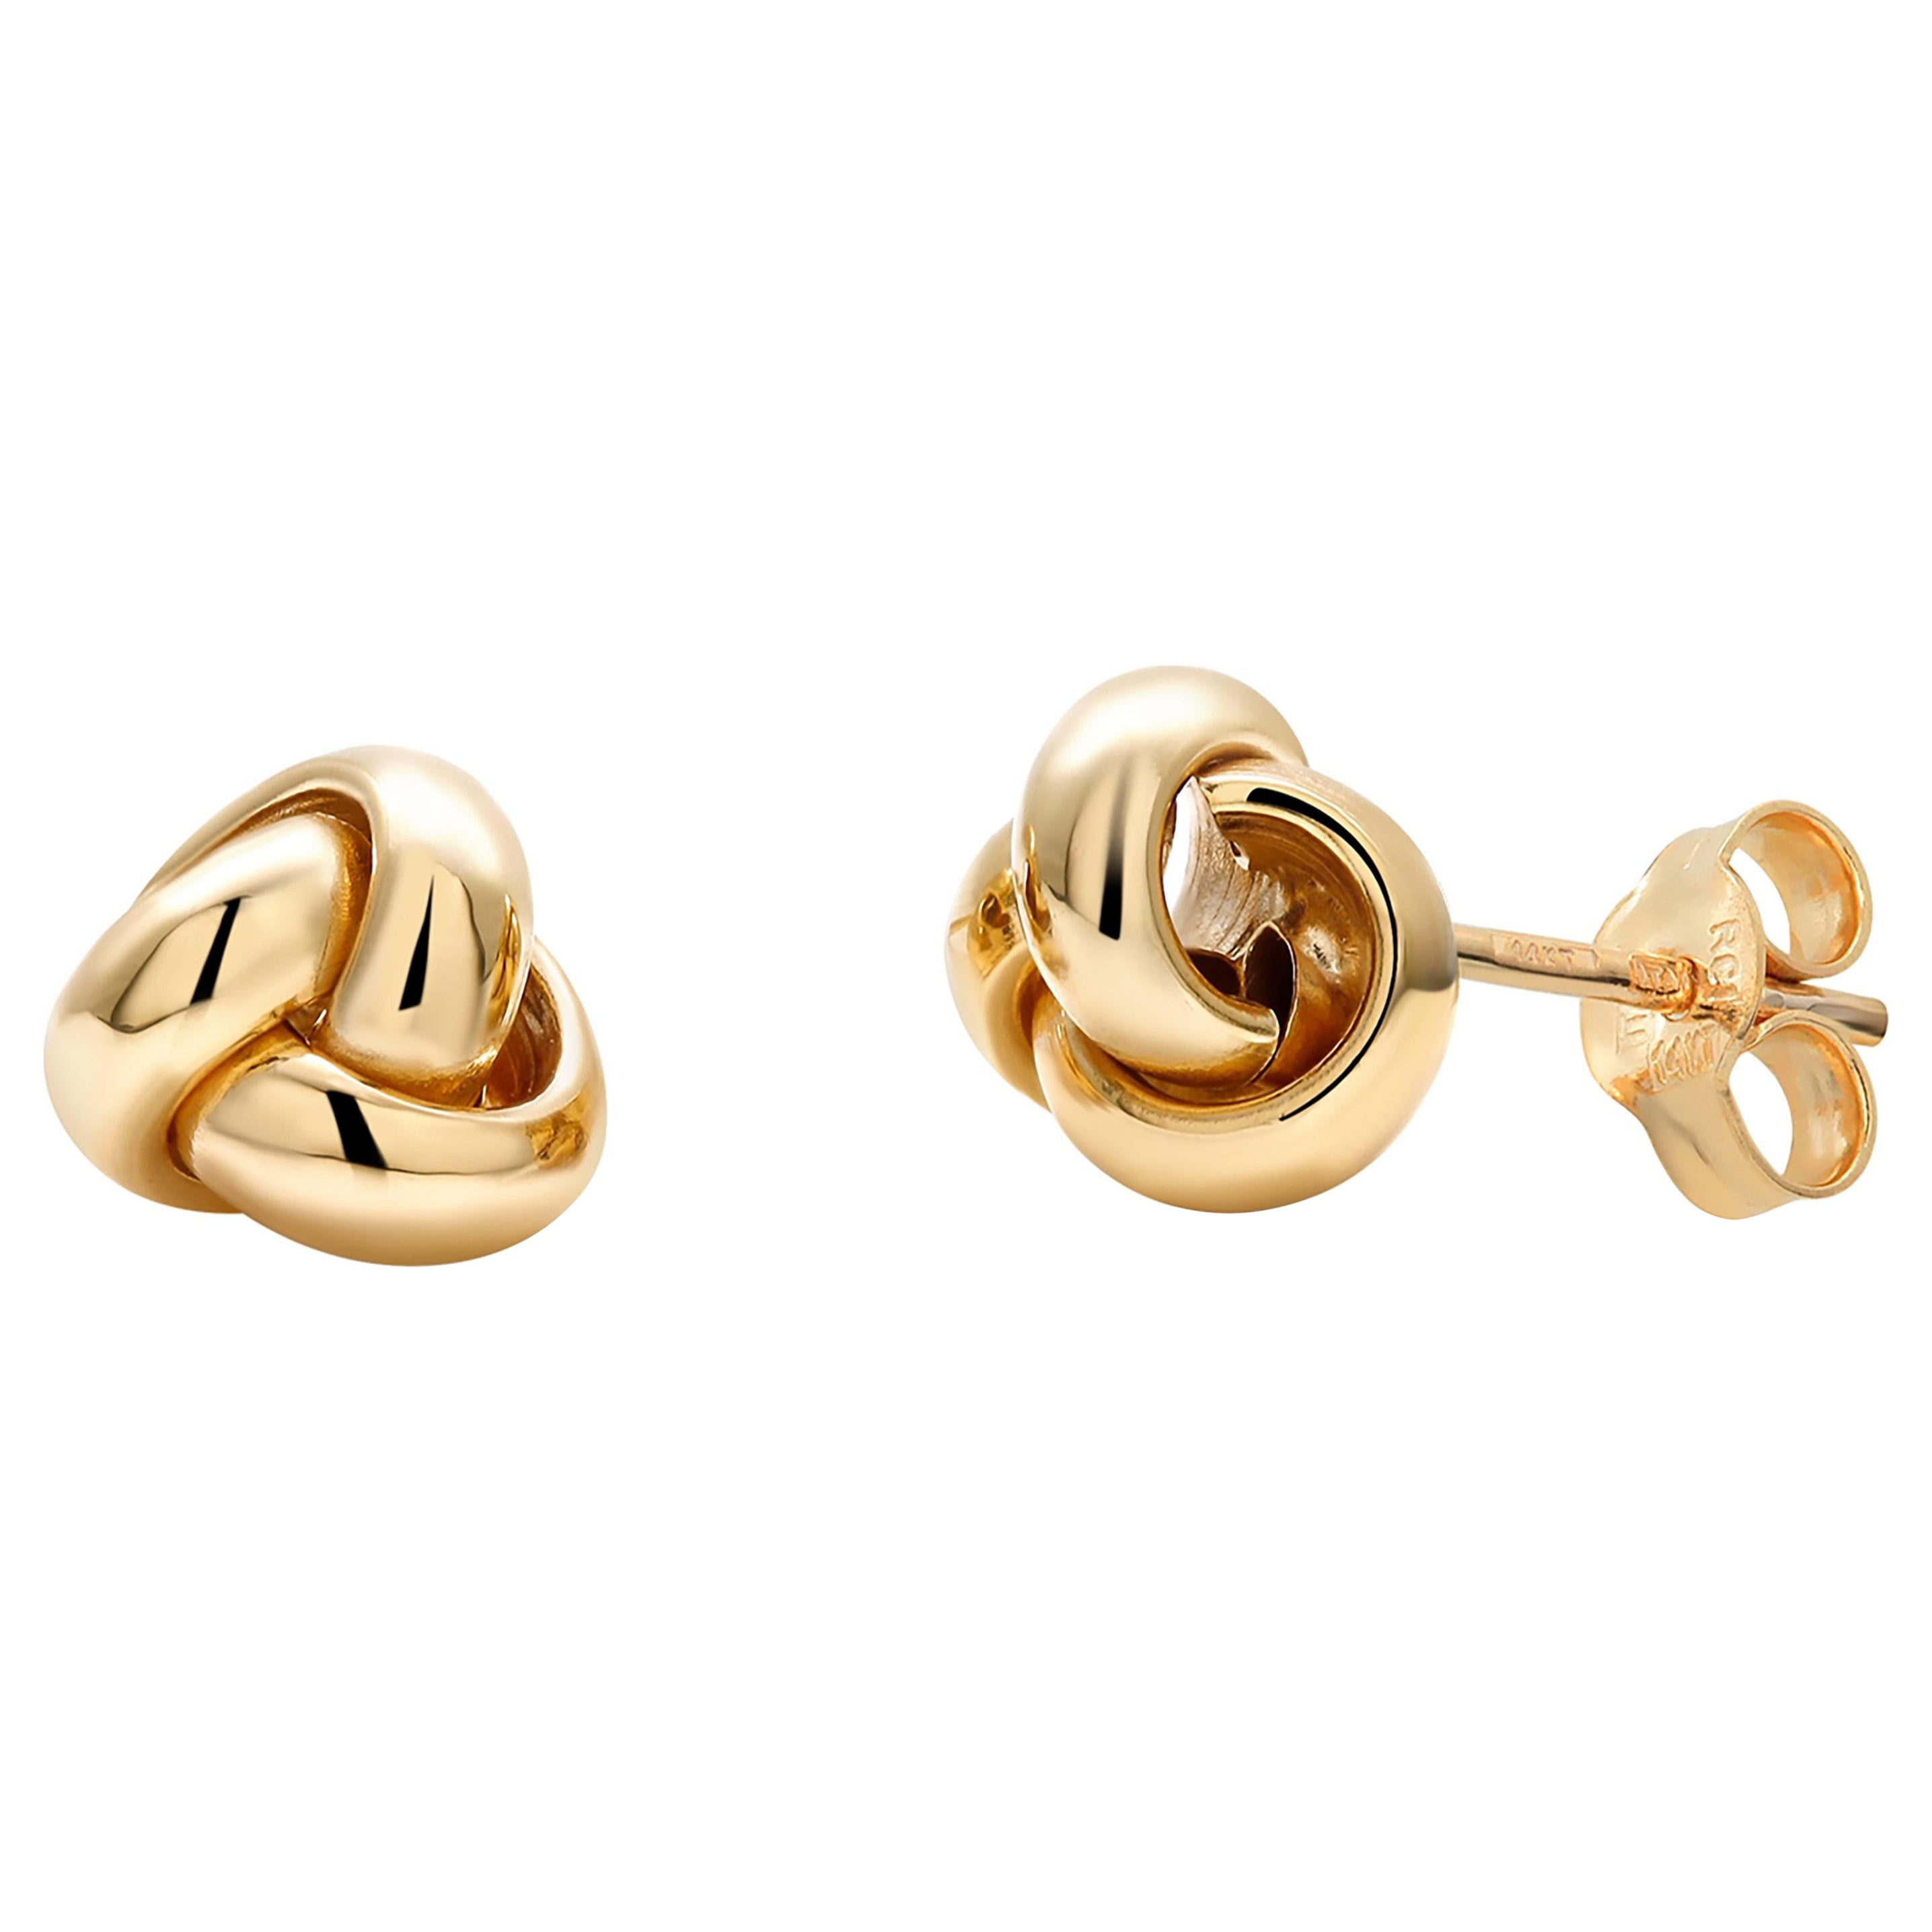 Fourteen Karats Yellow Gold 0.40 Inch Wide Love Knot Stud Earrings 